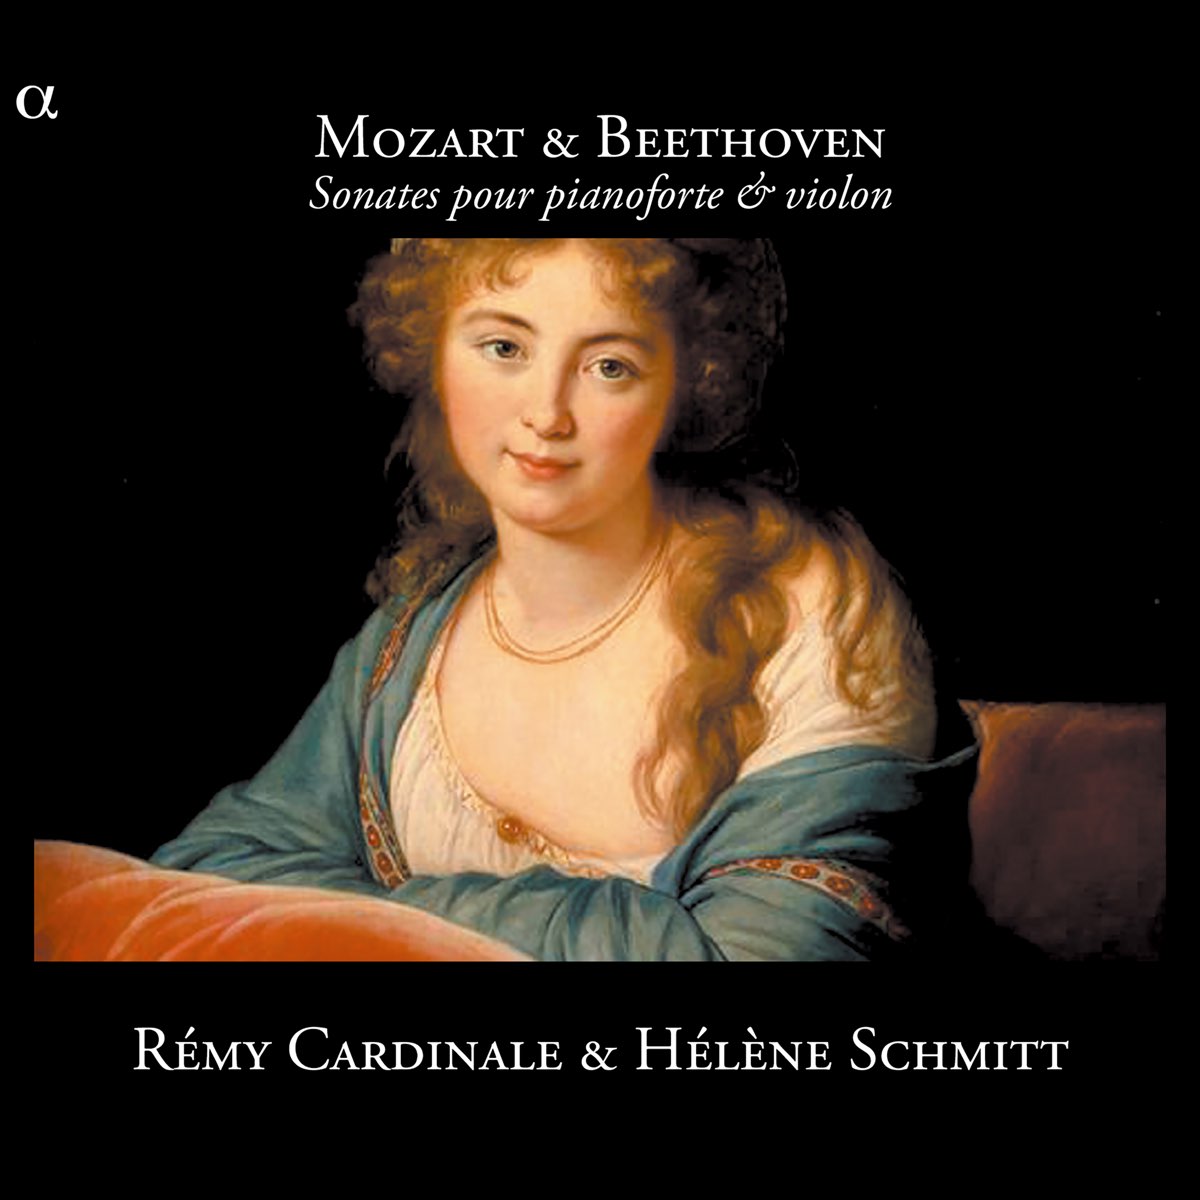 ‎Mozart & Beethoven: Sonates pour pianoforte & violon by Rémy Cardinale ...